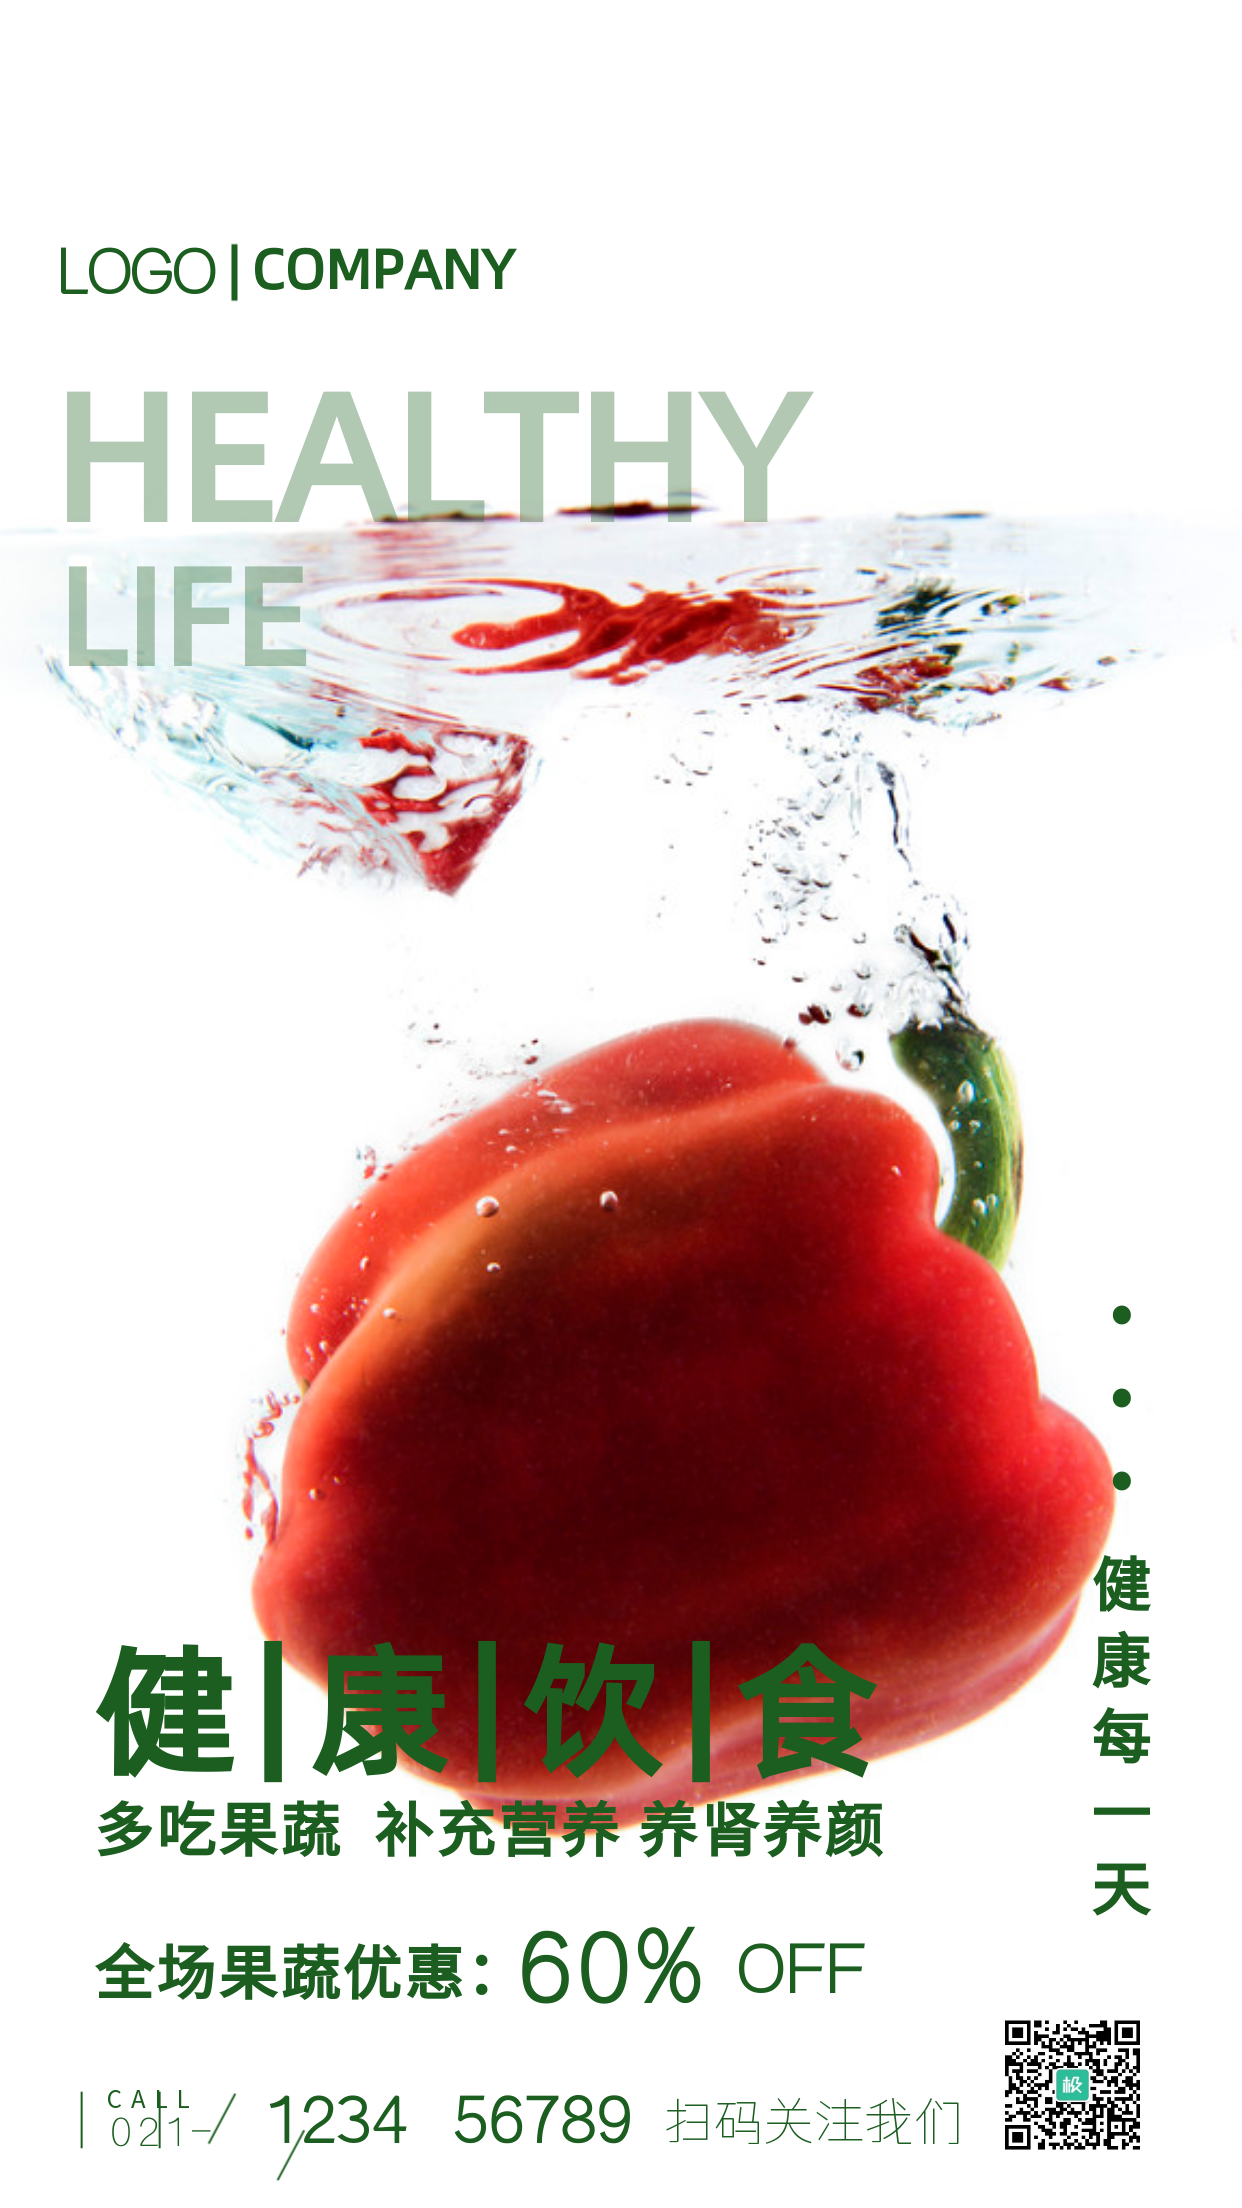 辣椒摄影图果蔬优惠活动摄影图手机海报